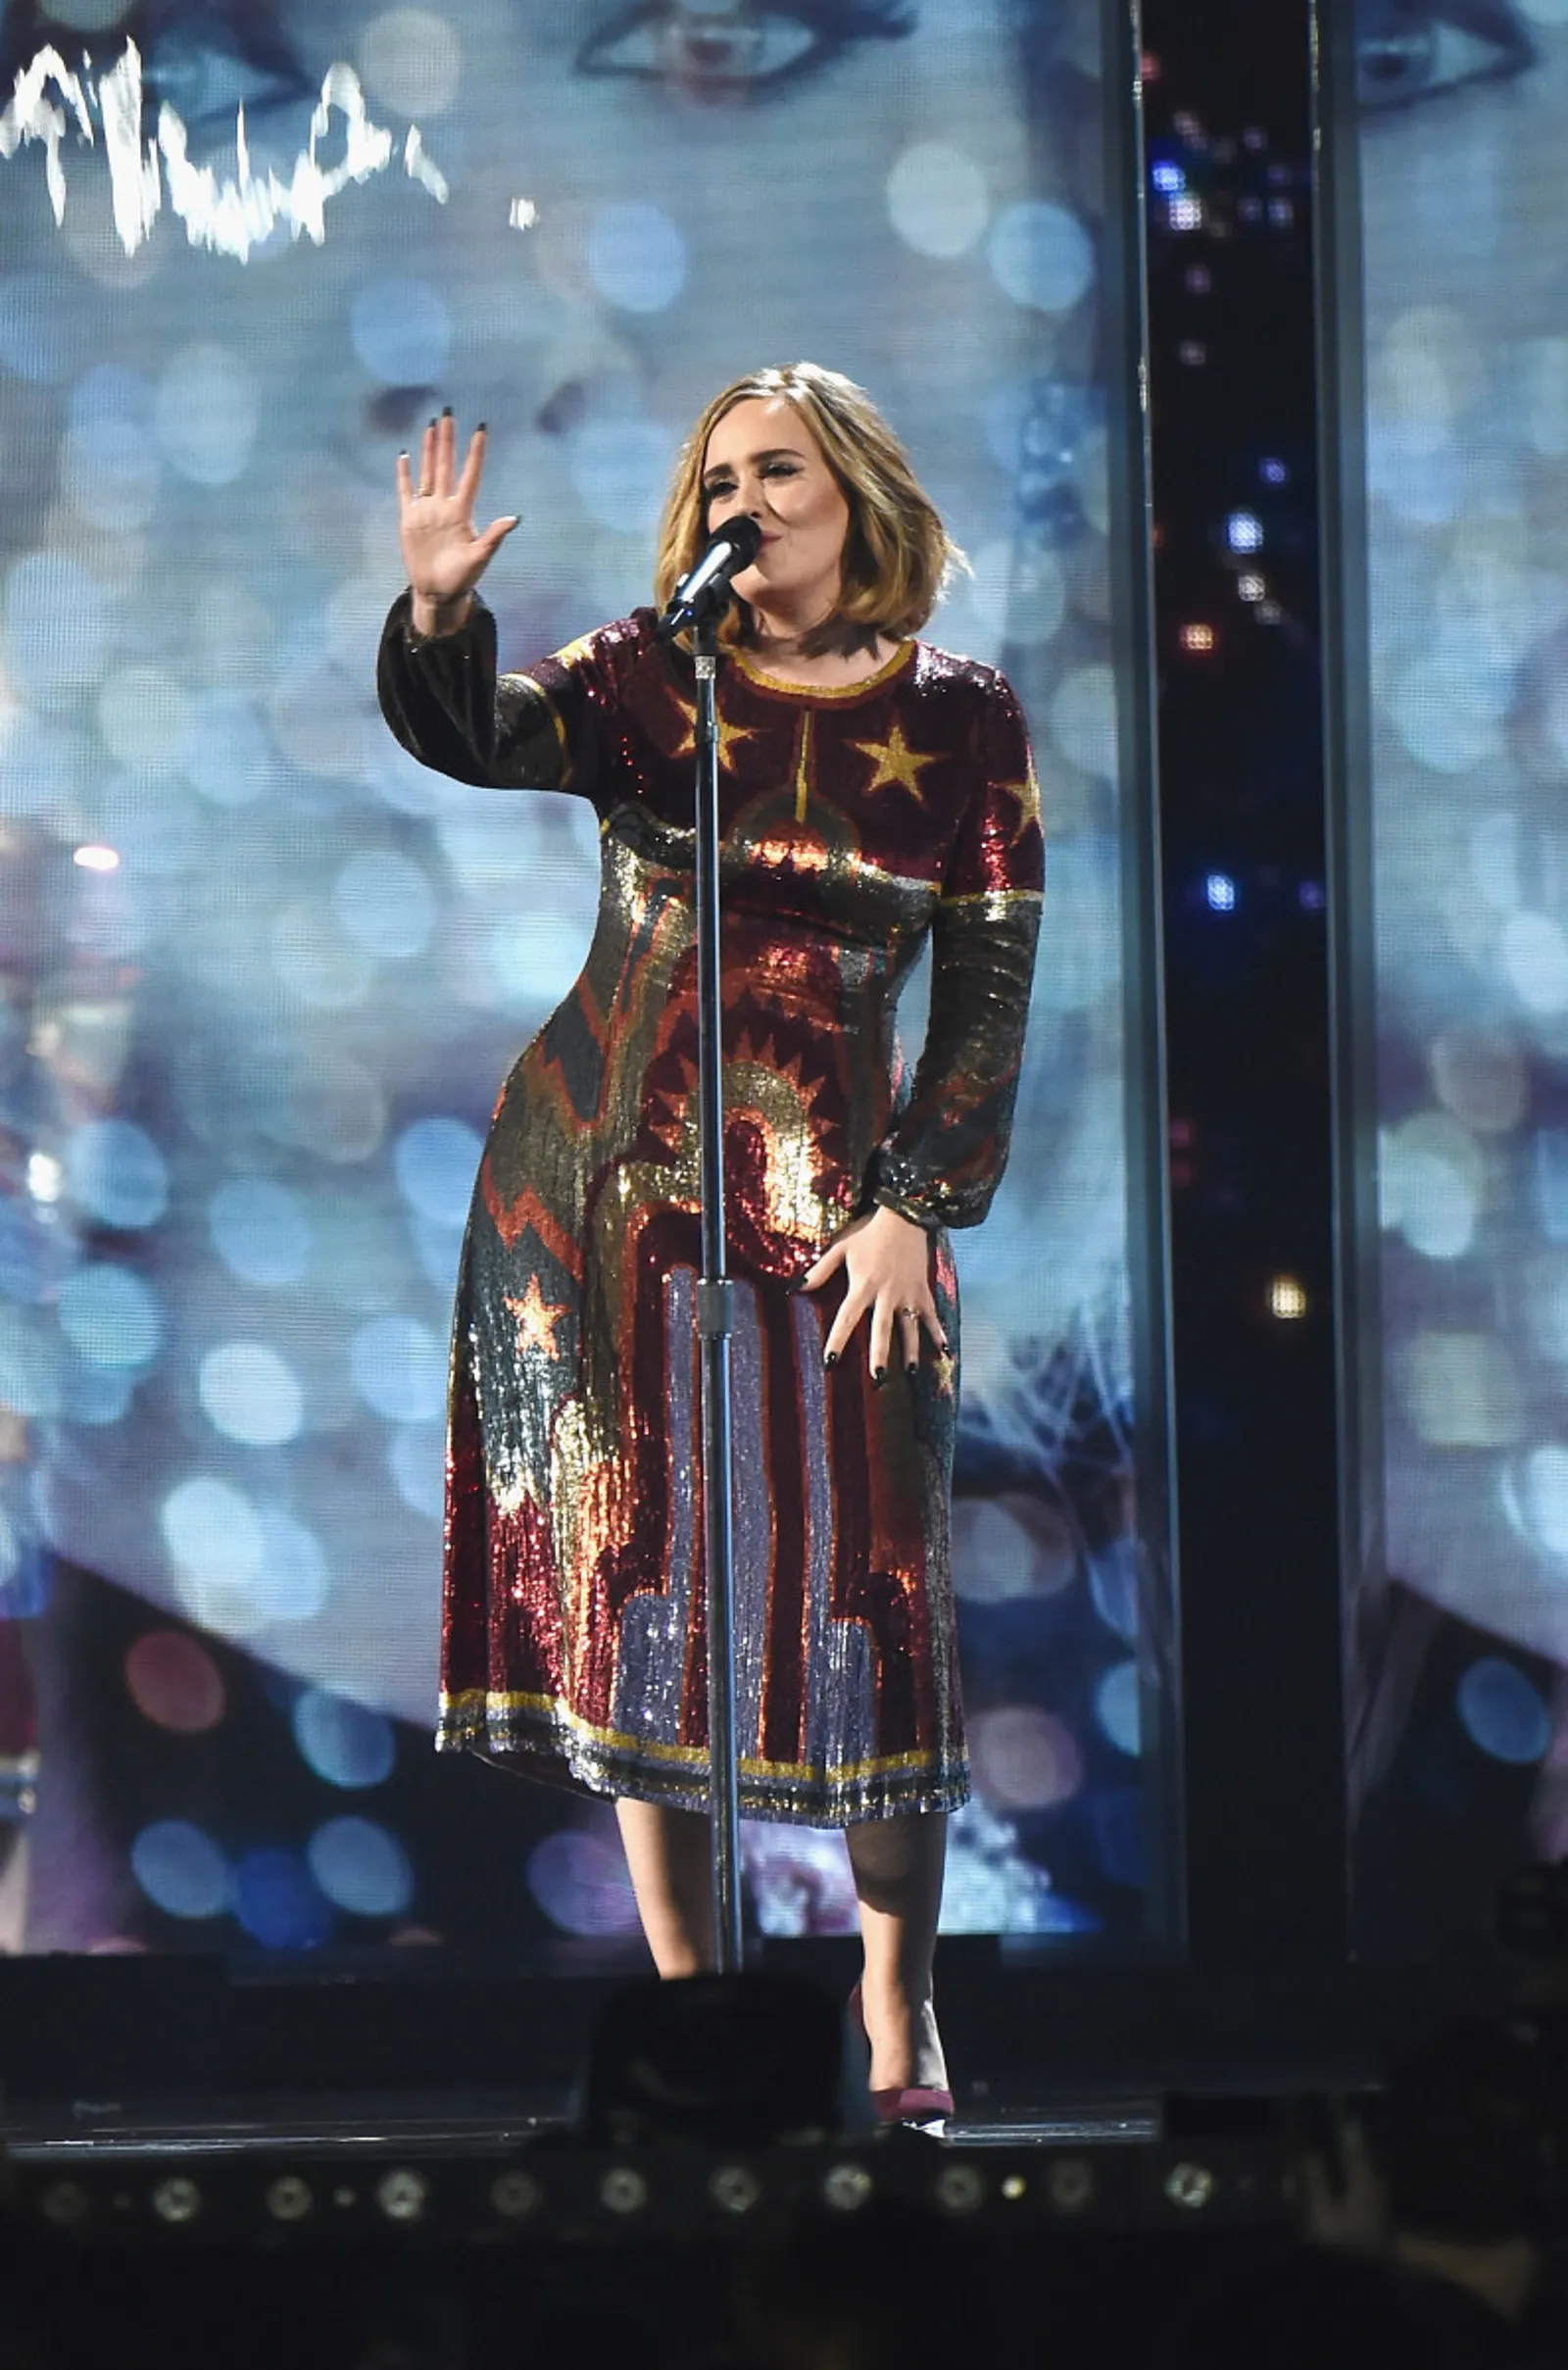 7 Gaun Glamor Adele di Panggung yang Mencuri Perhatian